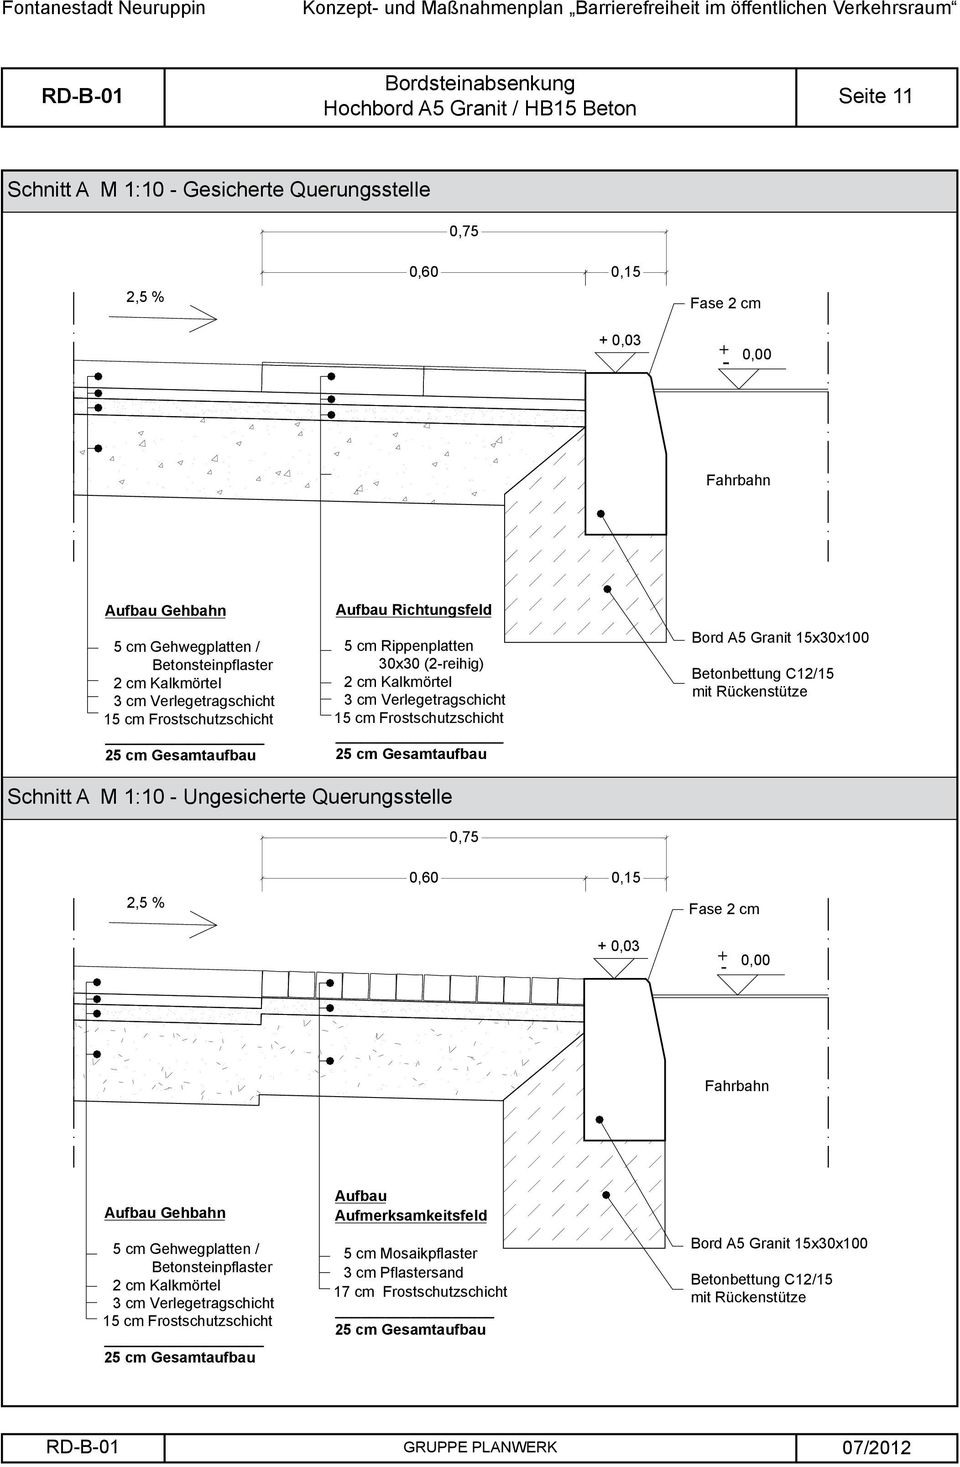 Frostschutzschicht _ Bord Granit Betonbettung C12/15 mit Rückenstütze Schnitt A M 1:10 - Ungesicherte Querungsstelle 0,75 2,5 % 0,15 Fase 2 cm + - 0,00 Aufbau Gehbahn 5 cm